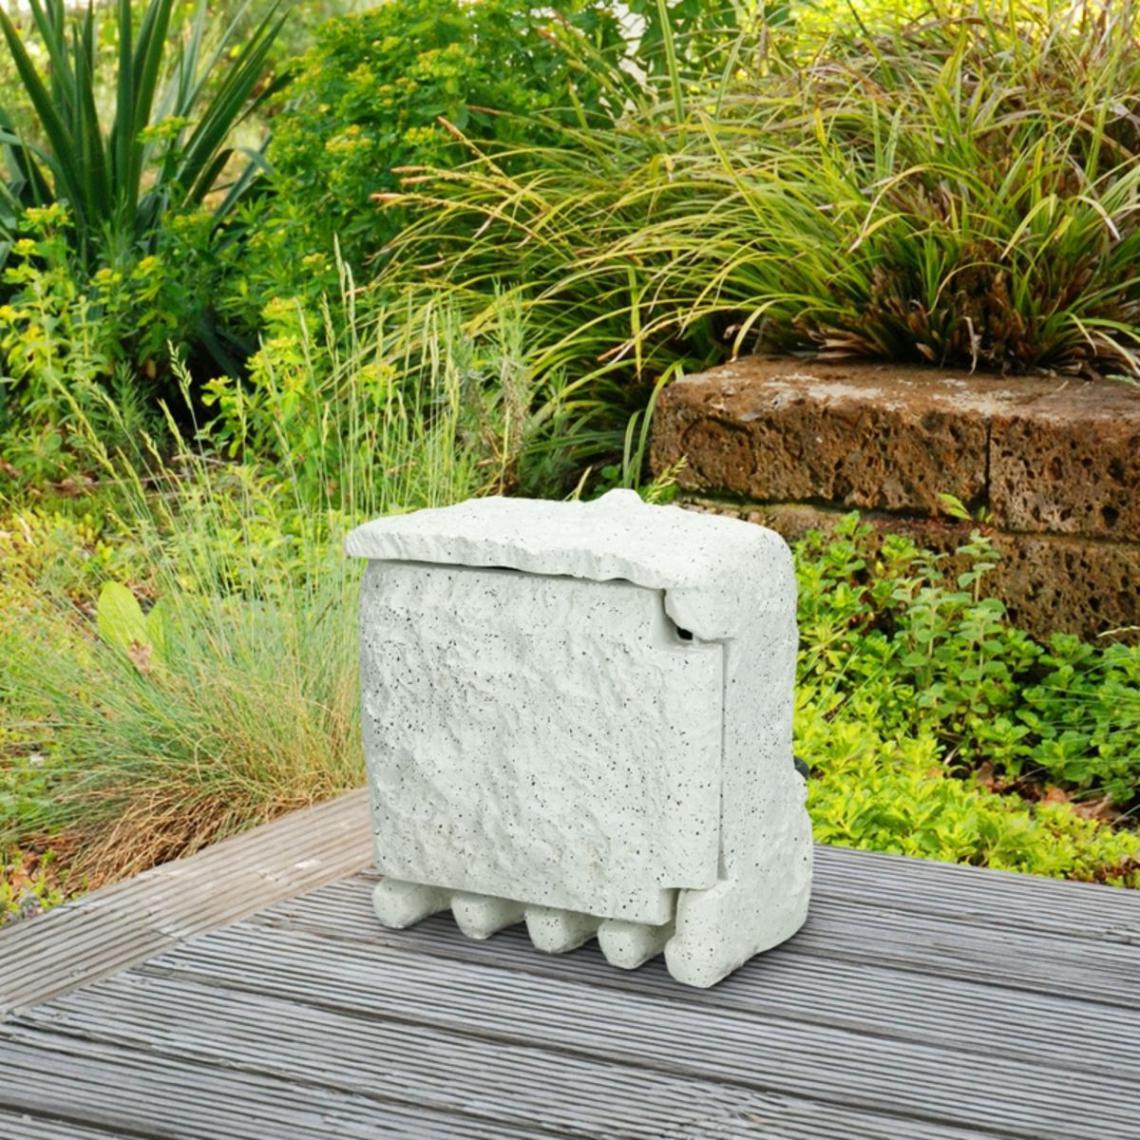 Ecd Germany - Prise de jardin extérieur imitation pierre rocher gris claire bloc 4 prises 1,5m - Blocs multiprises